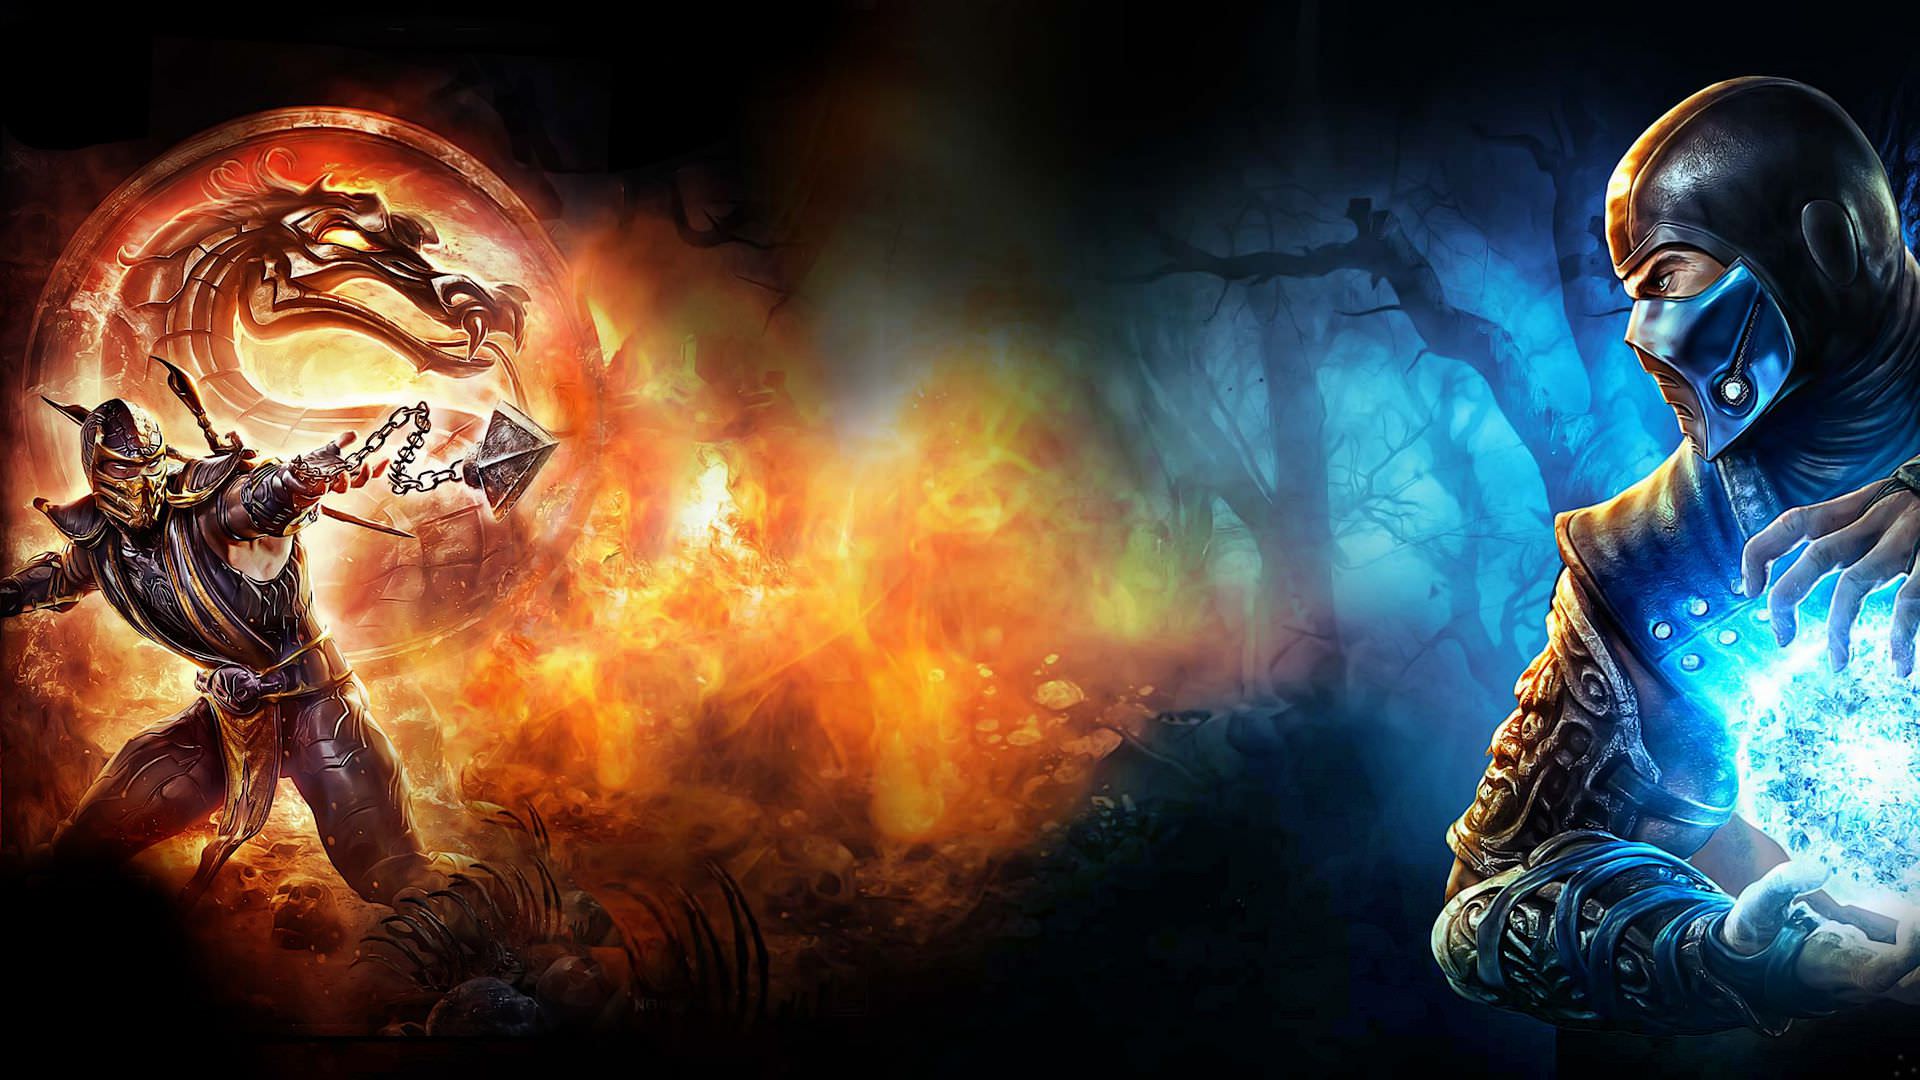 تاریخ اکران جدید فیلم Mortal Kombat مشخص شد؛ جلو افتادن اکران فیلم تام و جری